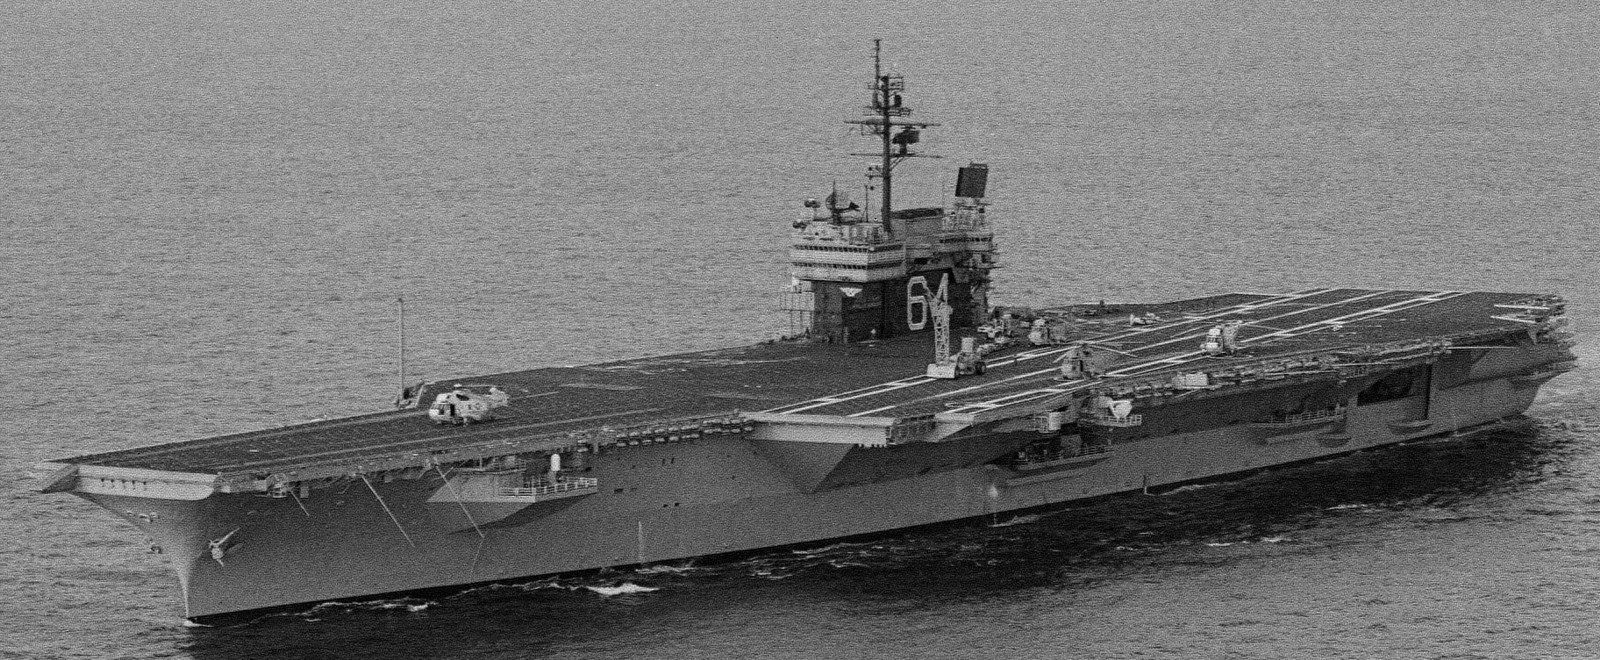 cv-64 uss constellation kitty hawk class aircraft carrier us navy 88